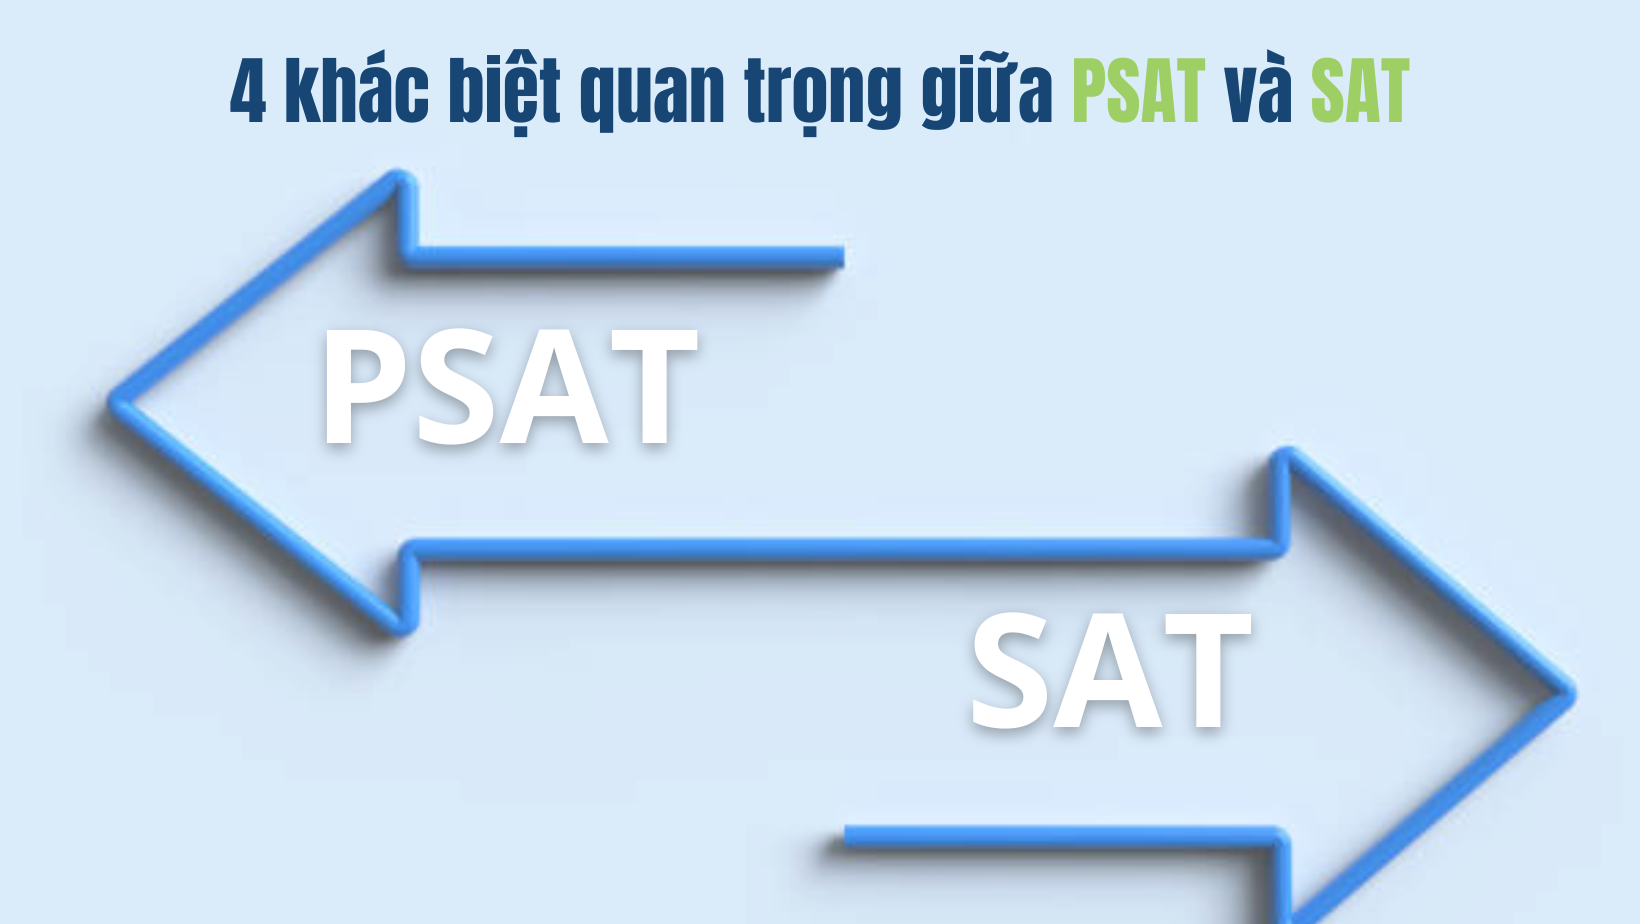 4 khác biệt quan trọng giữa PSAT và SAT